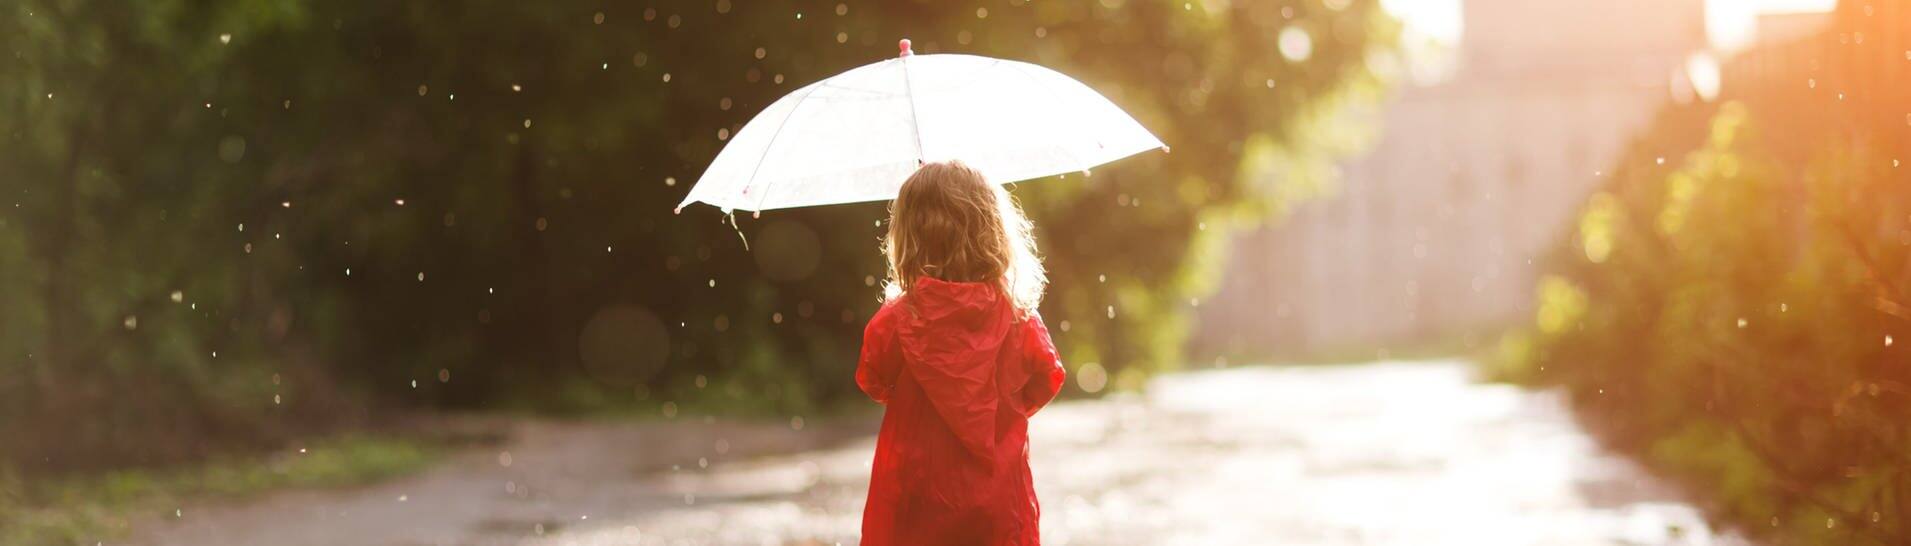 Ein Kind läuft mit Schirm und Gummistiefeln durch den Regen. (Foto: Adobe Stock, ulza)